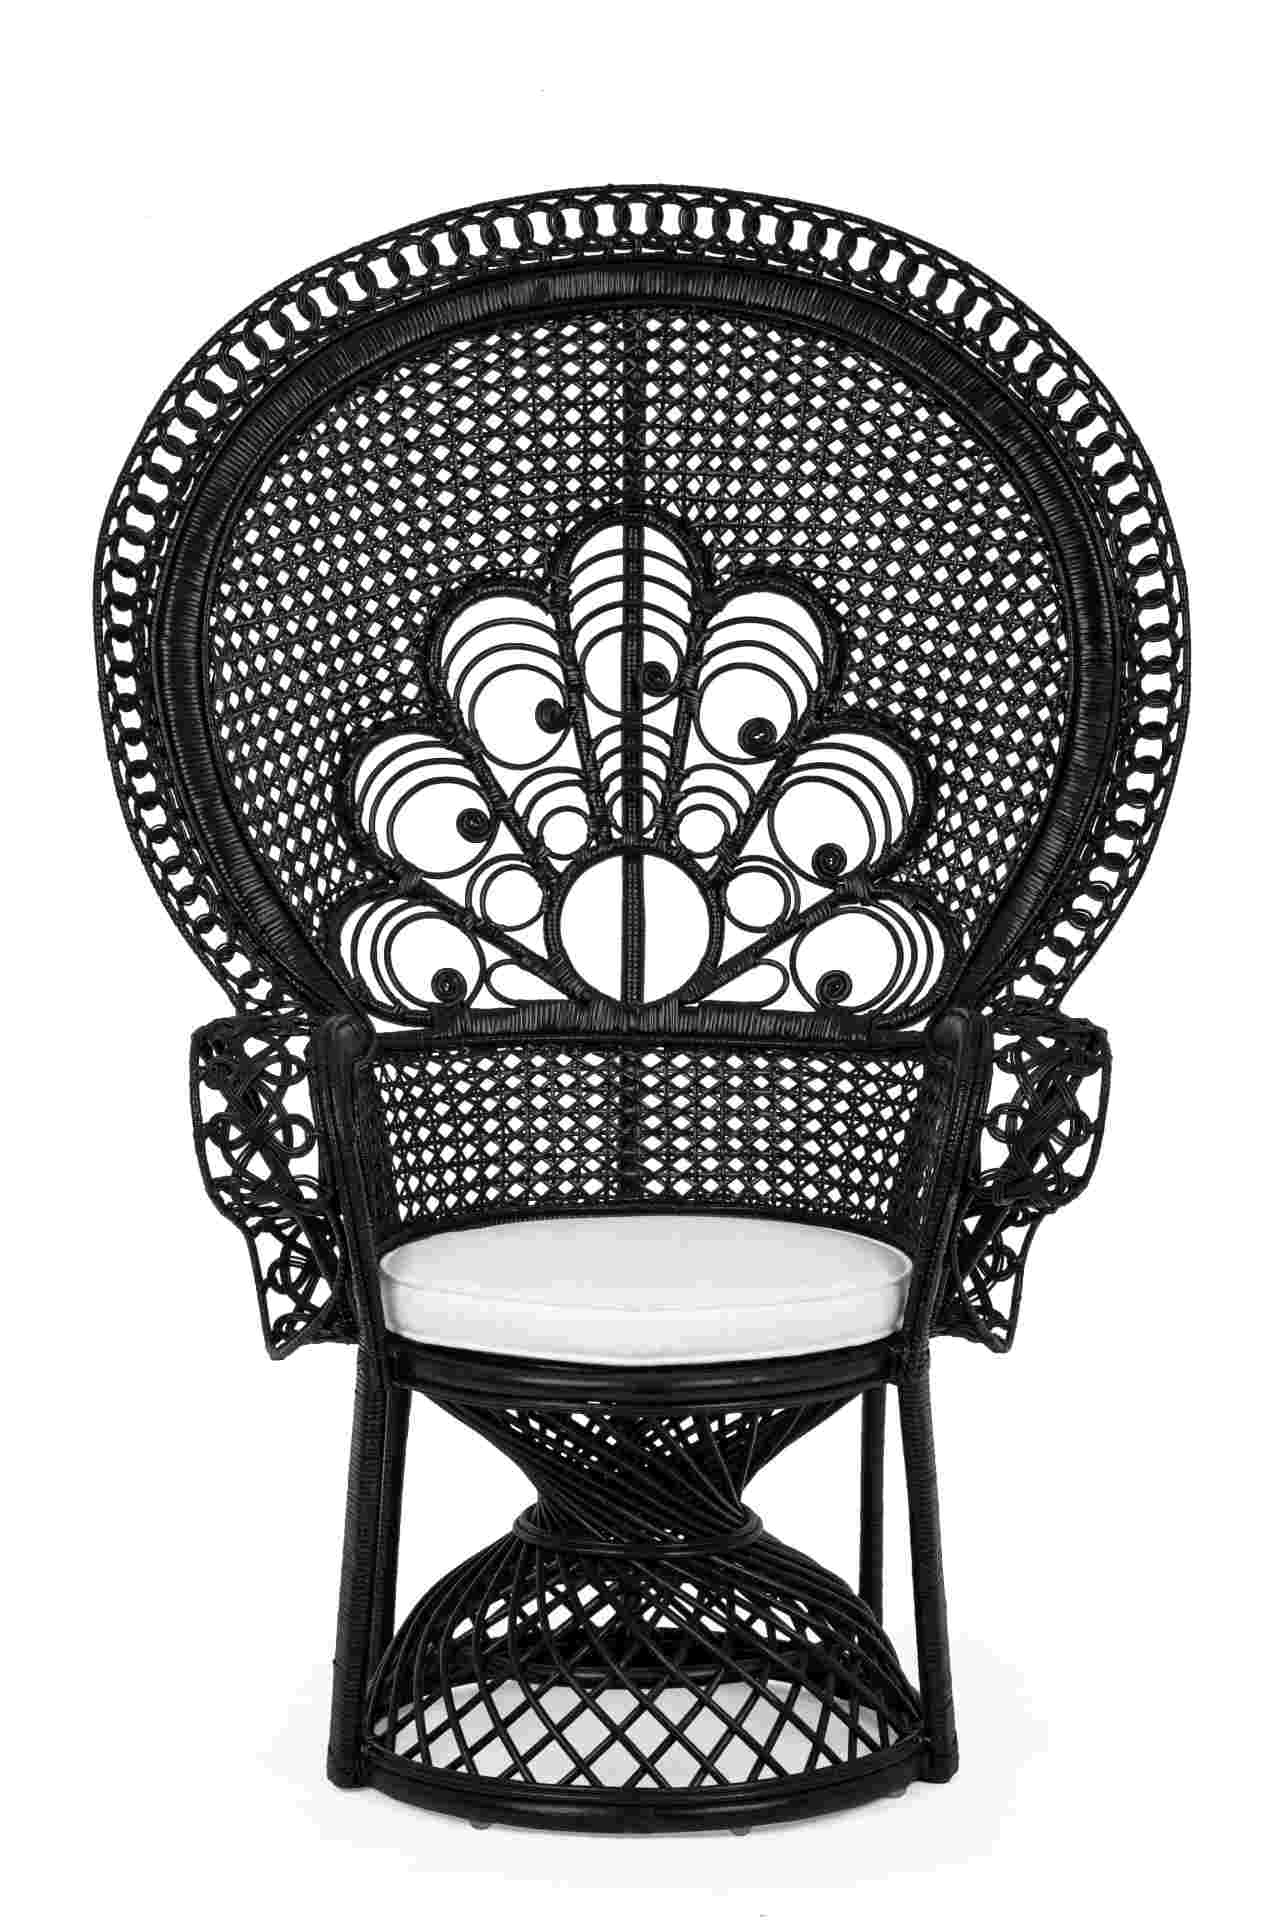 Der Sessel Peacock überzeugt mit seinem klassischen Design. Gefertigt wurde er aus Rattan, welches einen schwarzen Farbton besitzt. Das Gestell ist auch aus Rattan. Der Sessel besitzt eine Sitzhöhe von 47 cm. Die Breite beträgt 106 cm.